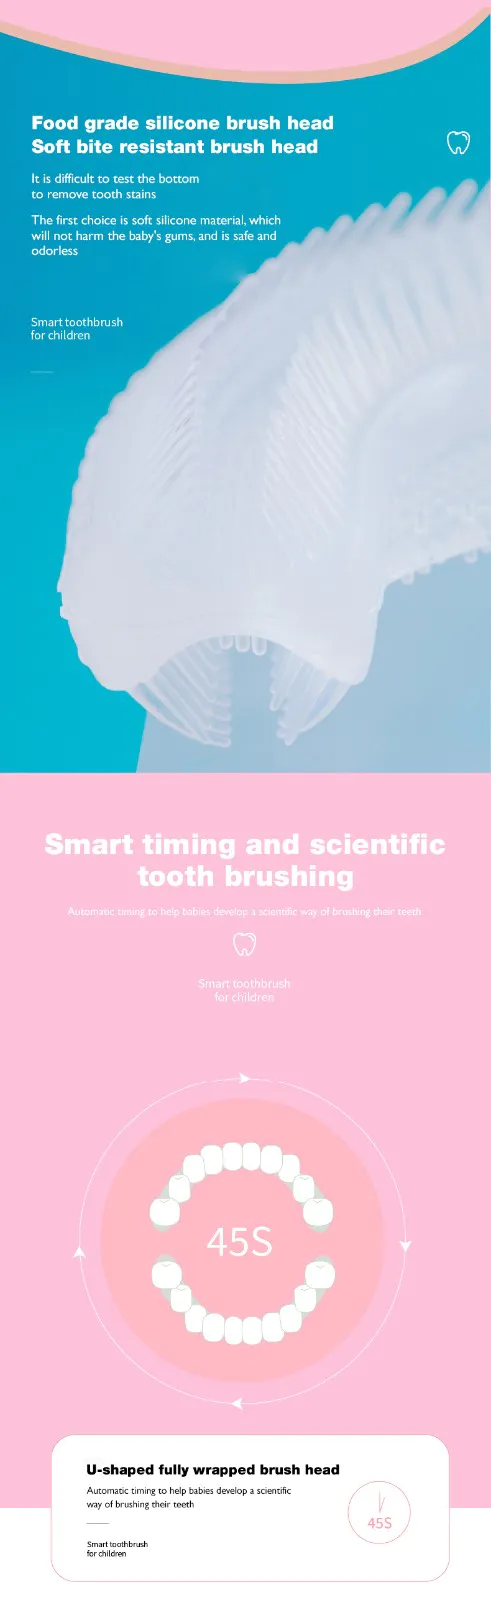 GlorySmile best smart toothbrush Supply for teeth